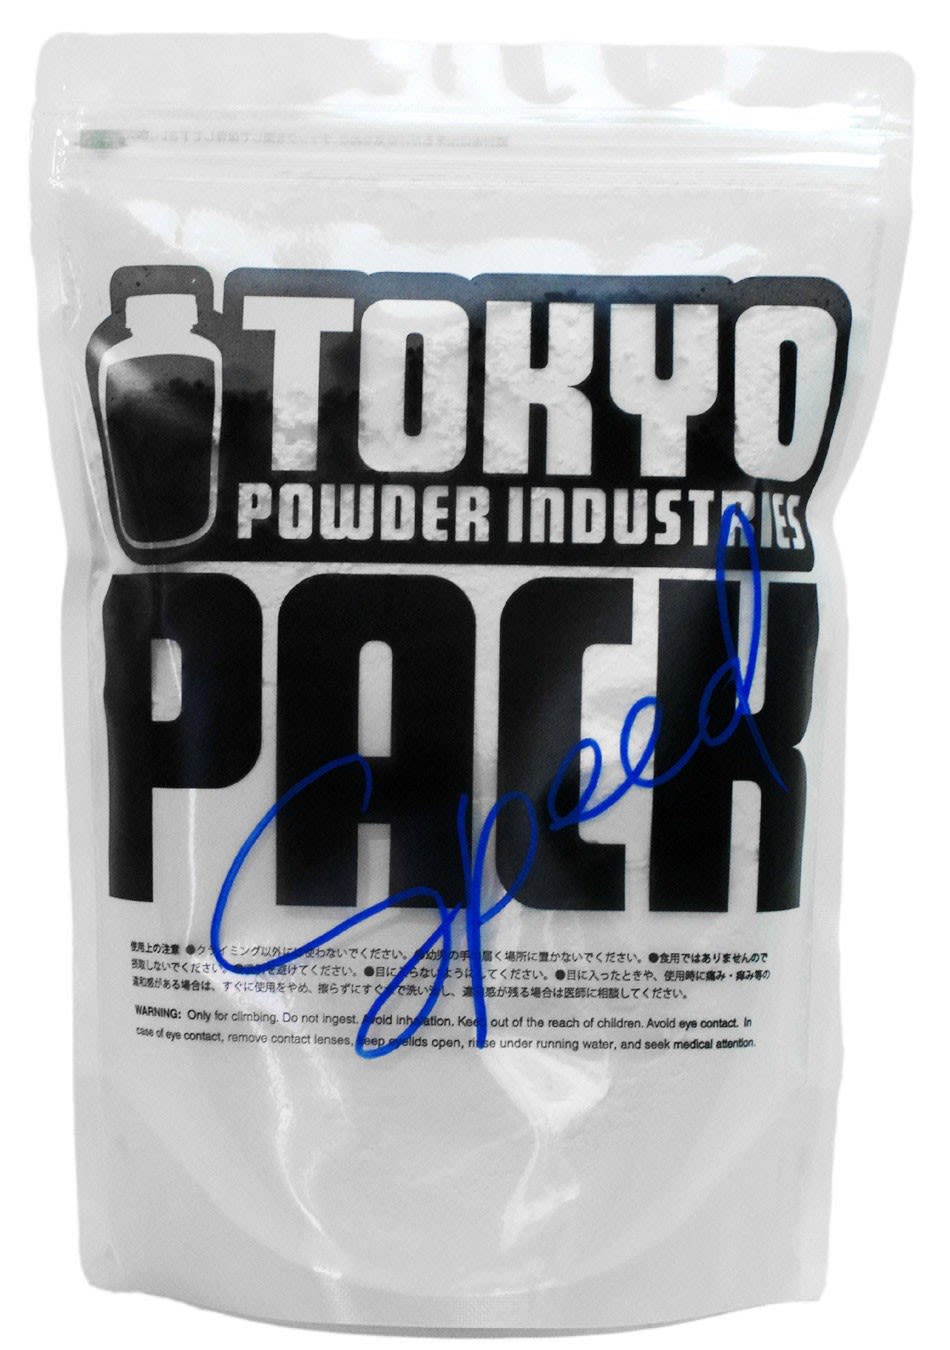 Tokyo Powder Speed Chalk 330 G Weiss- Chalk und Chalkbags- Grsse 330 g - Farbe White unter Tokyo Powder